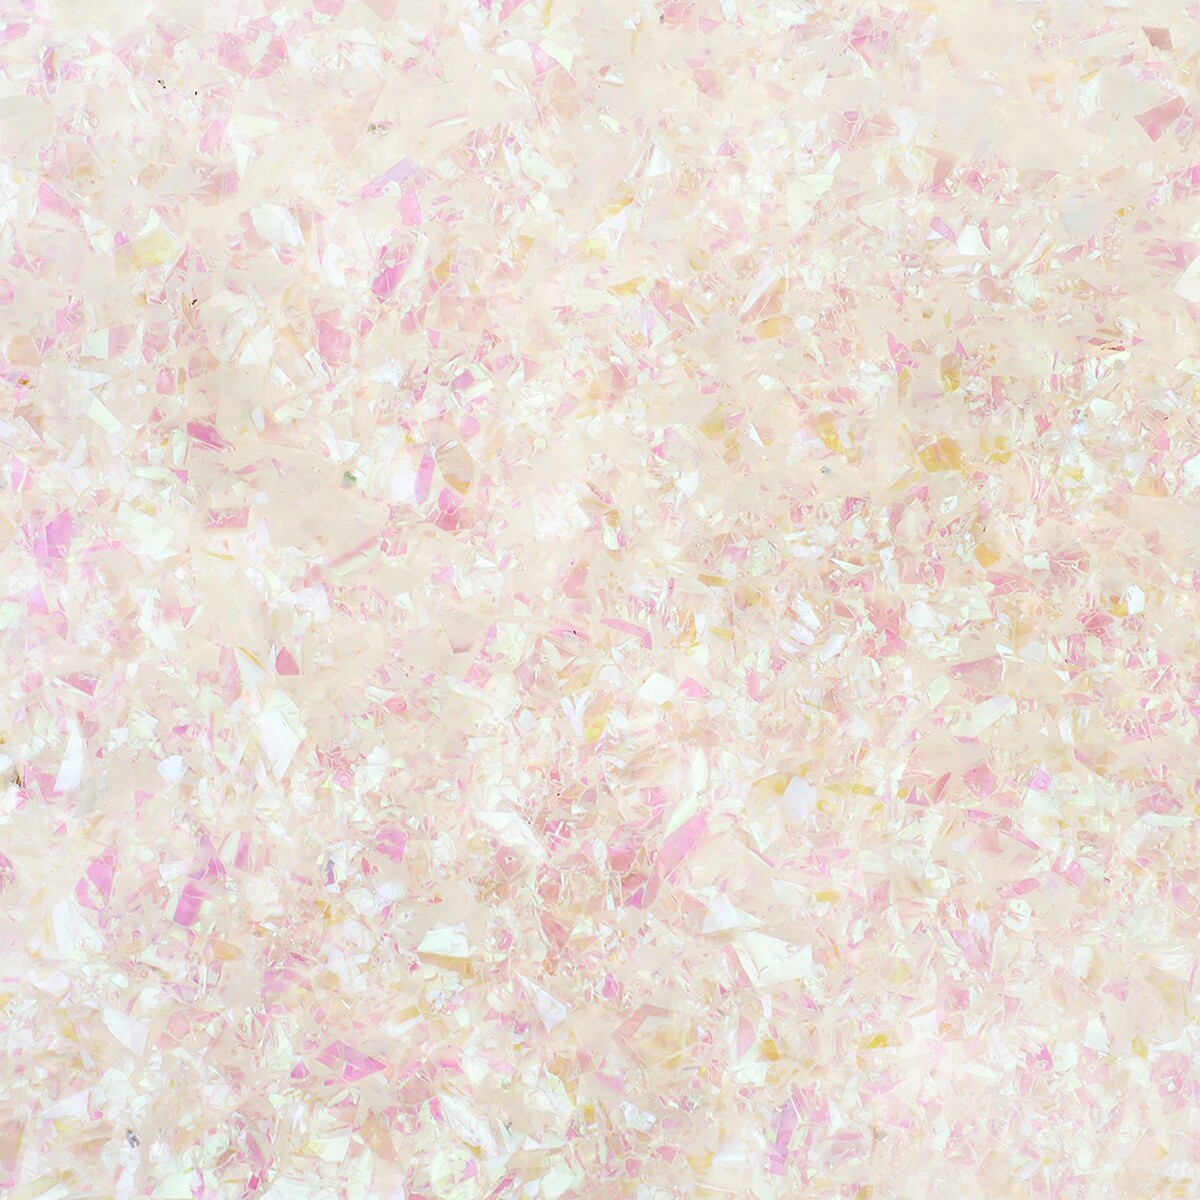 Конфетти для воздушного шара дробленые, хамелеон, розовый, перламутр, 20 г. мыльные конфетти